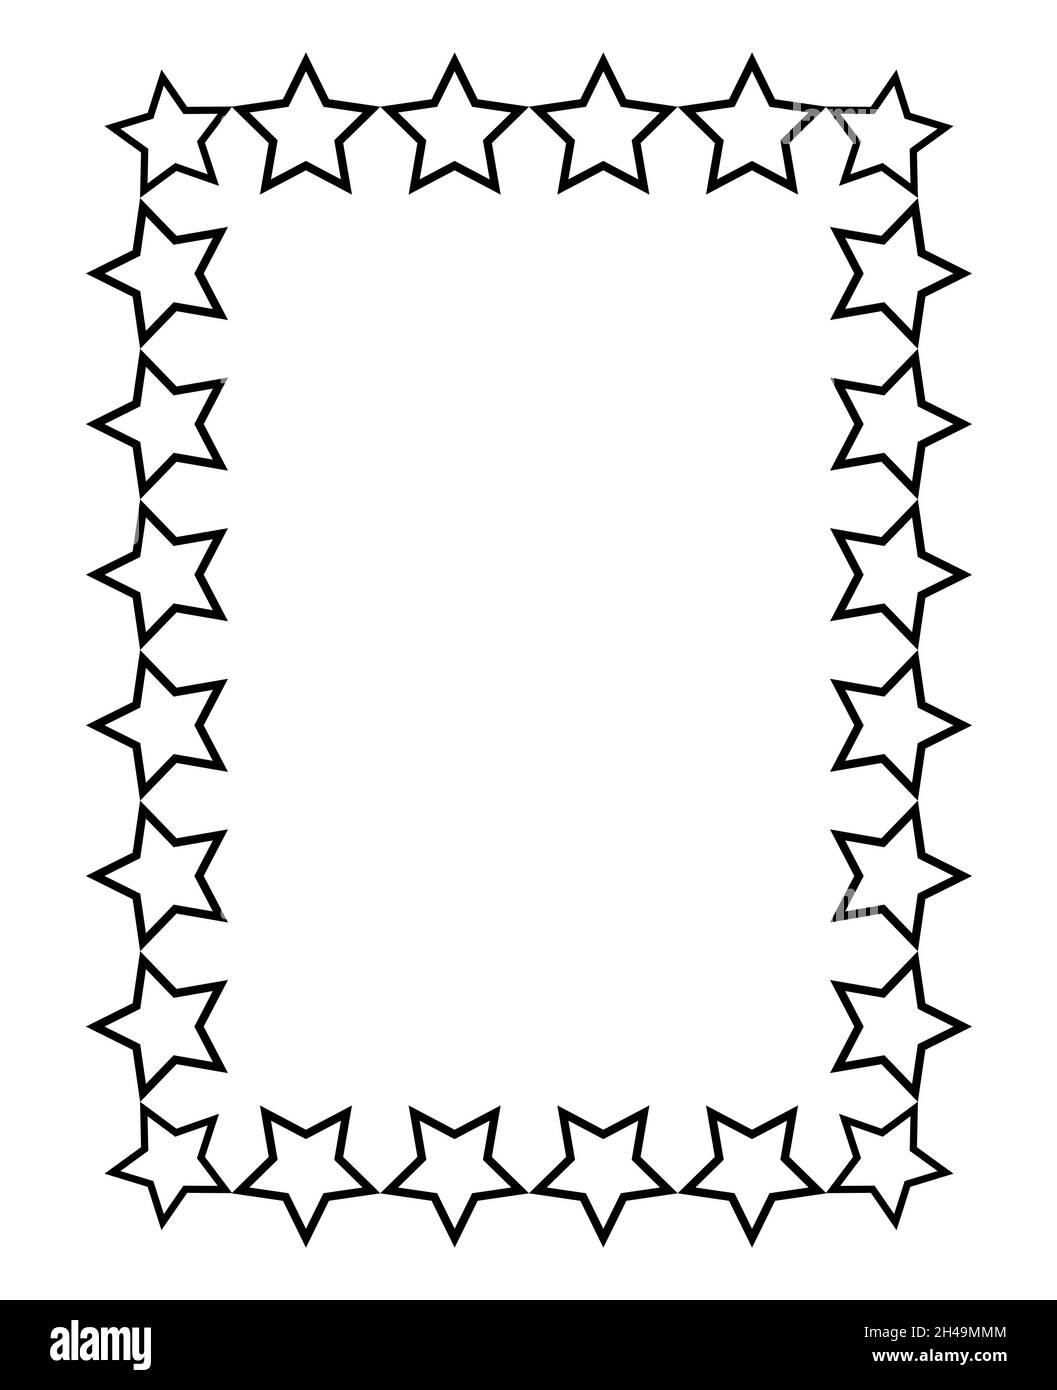 marco rectangular negro. formato a4. ilustración vectorial. Eps10 4261787  Vector en Vecteezy